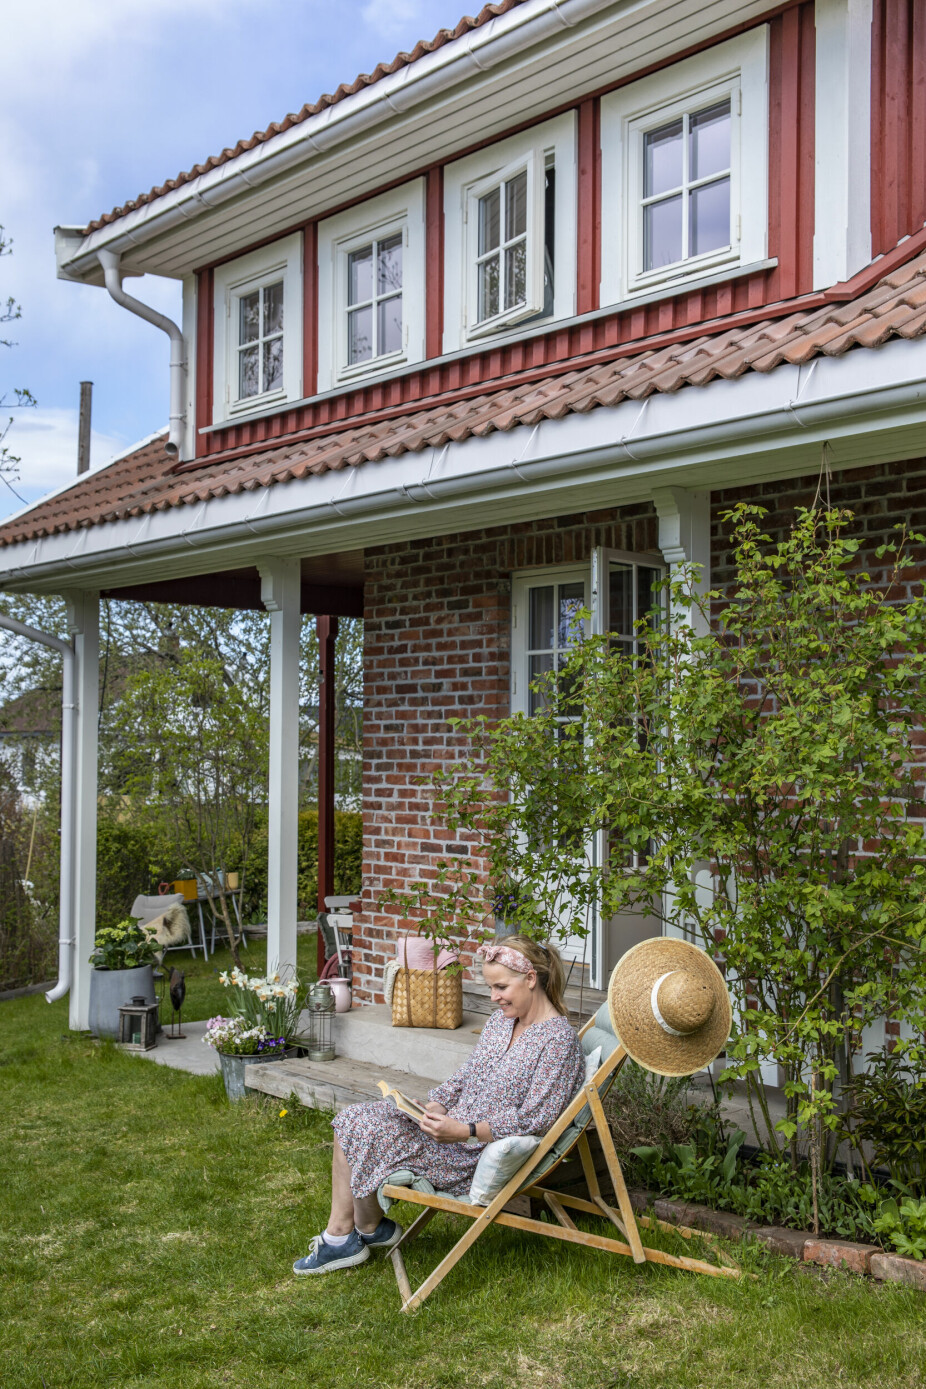 UTEROMSPRIS: Dette vakre hagehuset har paret bygd i samarbeid, og for den innsatsen vant de Uteromsprisen til Bergene Holm.